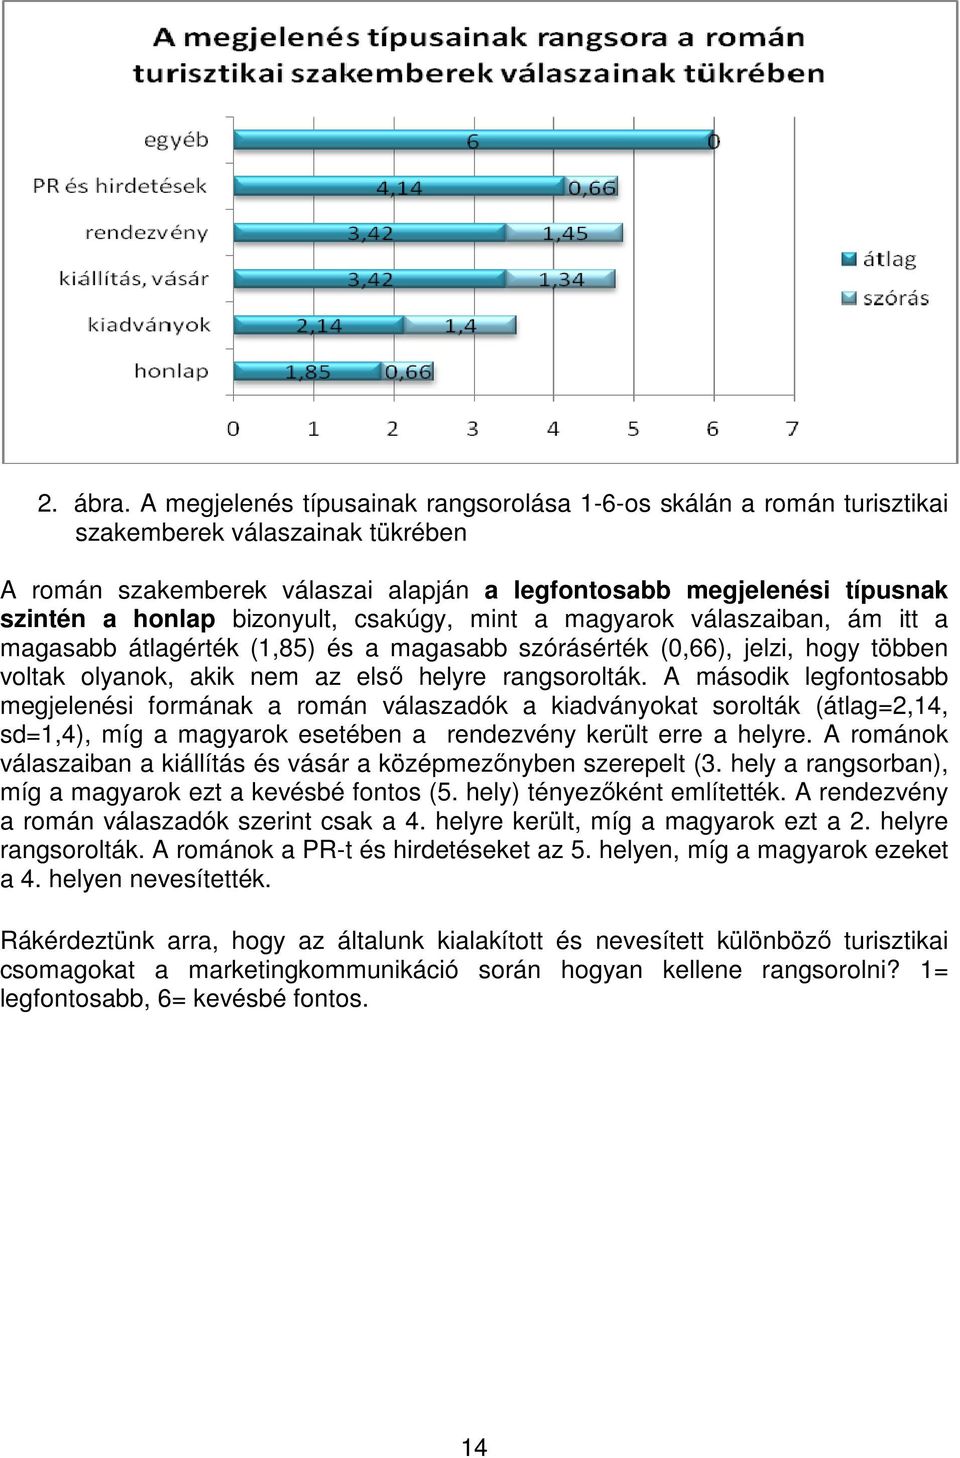 bizonyult, csakúgy, mint a magyarok válaszaiban, ám itt a magasabb átlagérték (1,85) és a magasabb szórásérték (0,66), jelzi, hogy többen voltak olyanok, akik nem az első helyre rangsorolták.